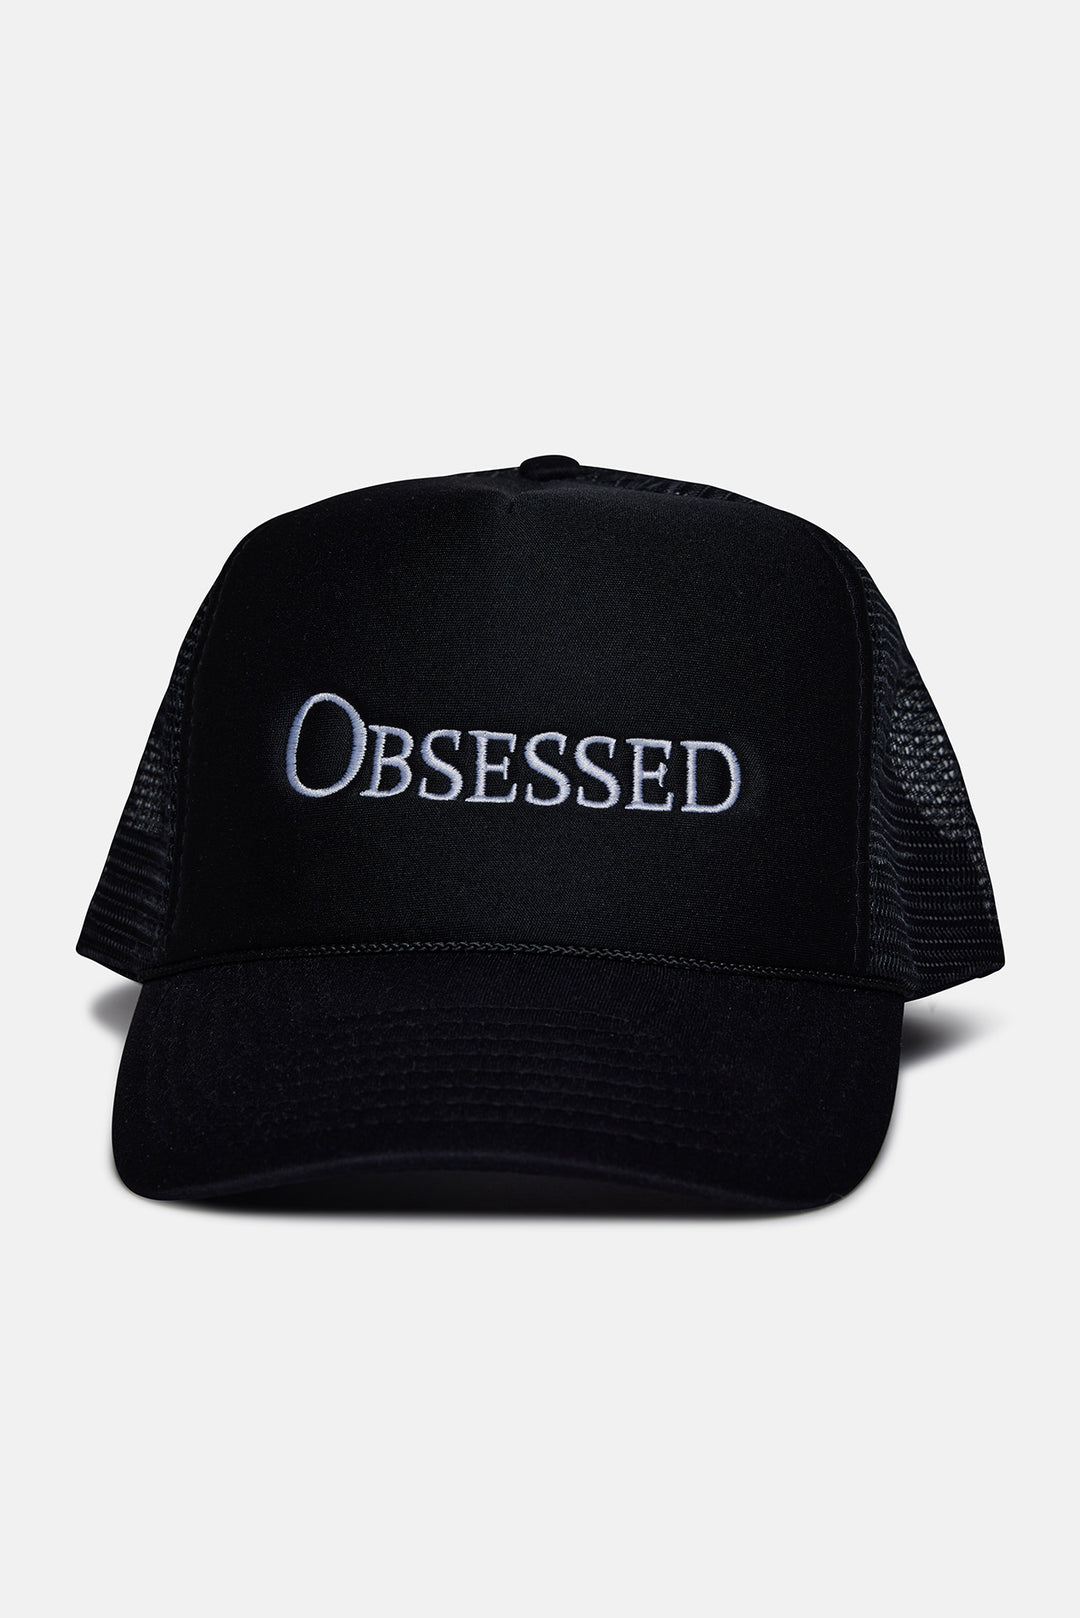 Obsessed Mesh Trucker Hat Black